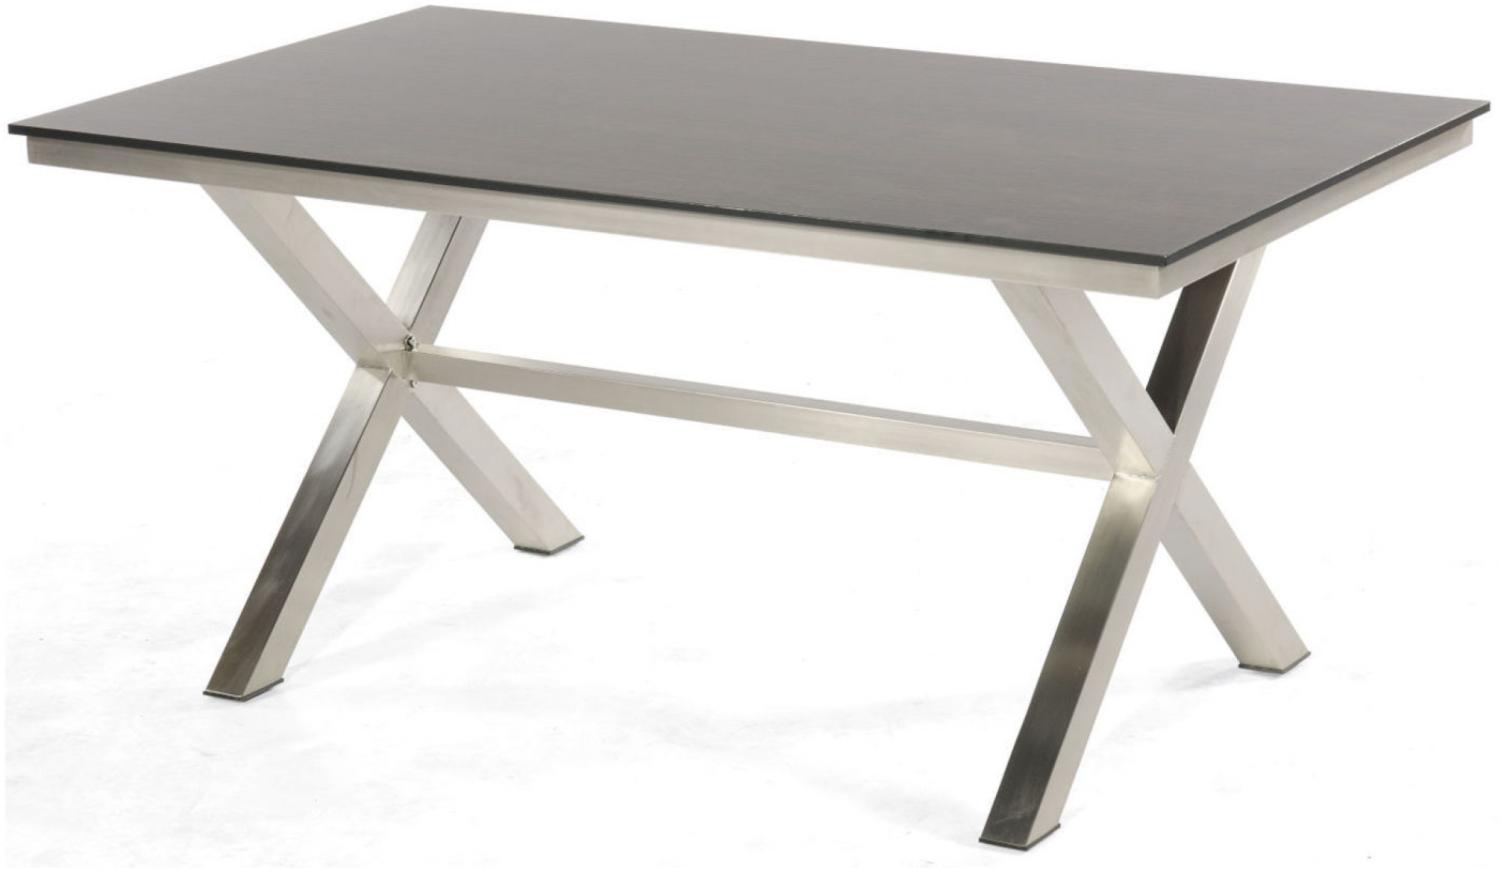 Sonnenpartner Gartentisch Base-Spectra 160x90 cm Edelstahl Tischsystem Tischplatte Select Old Teak Bild 1